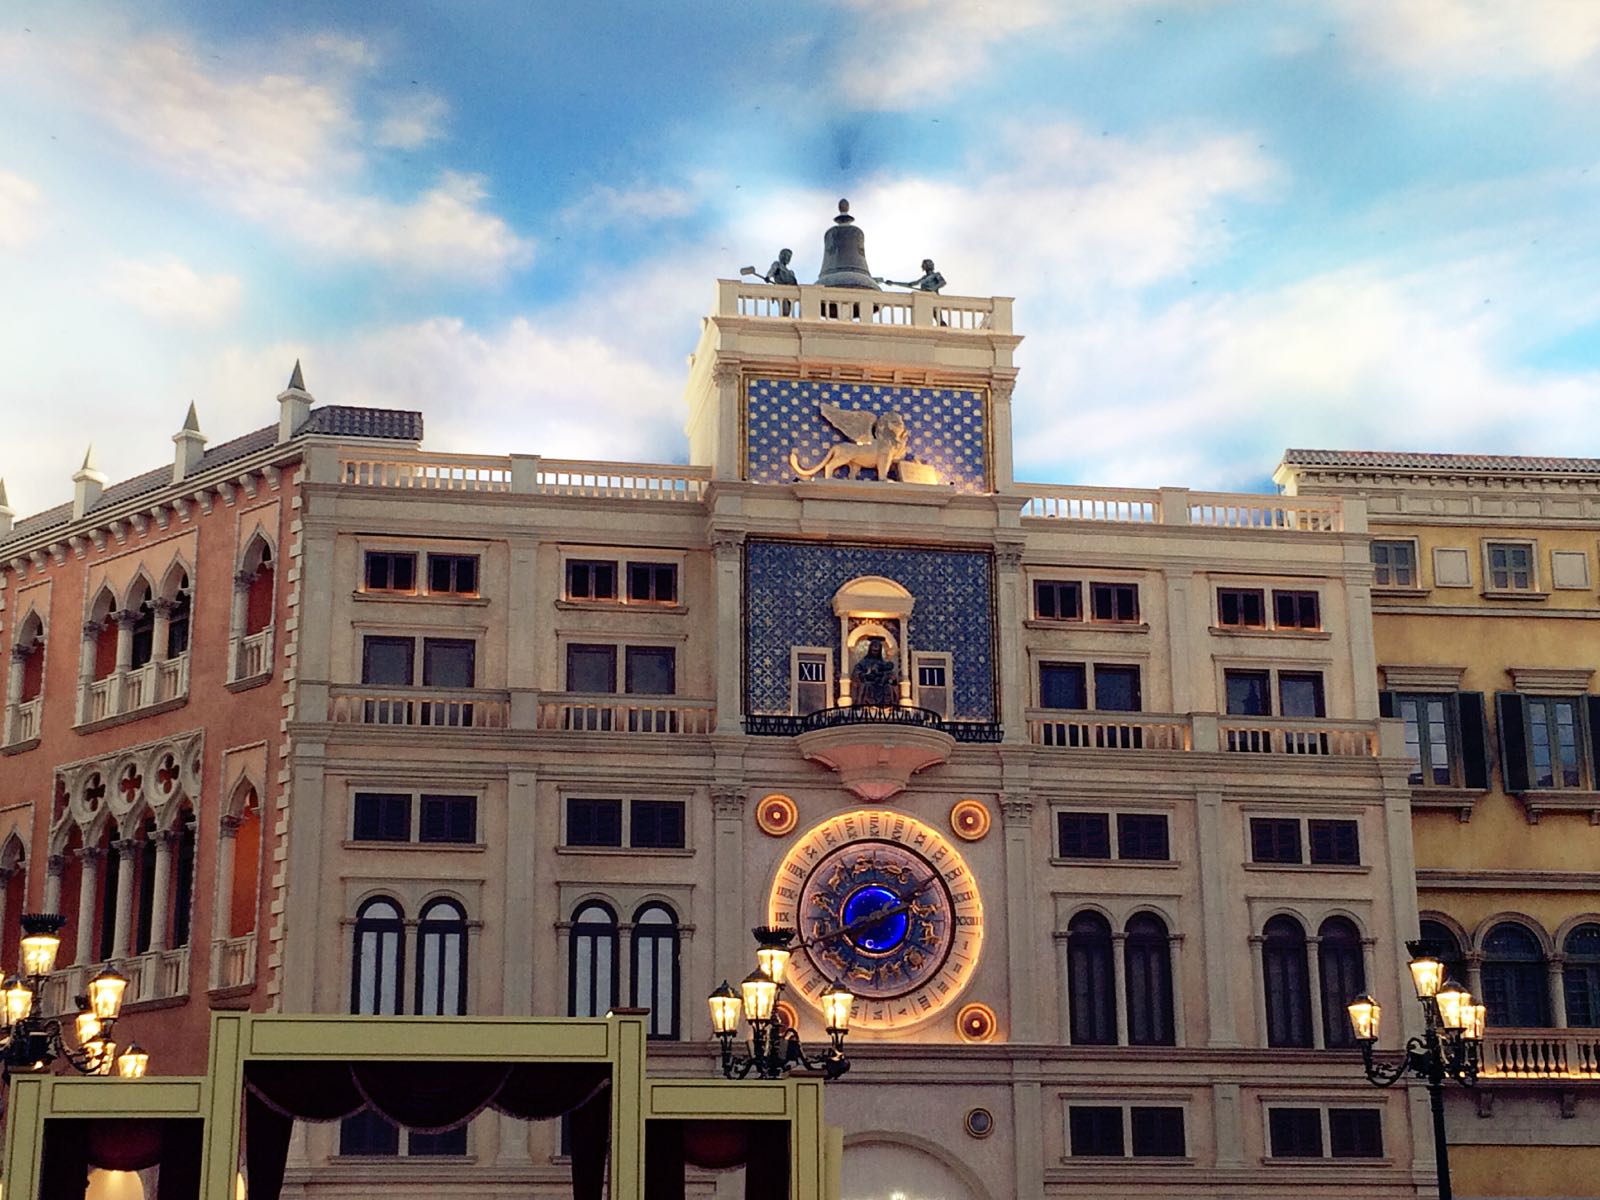 威尼斯人购物中心的天空还是给人一种眼前一亮的感觉，很蓝很梦幻。摇船的船